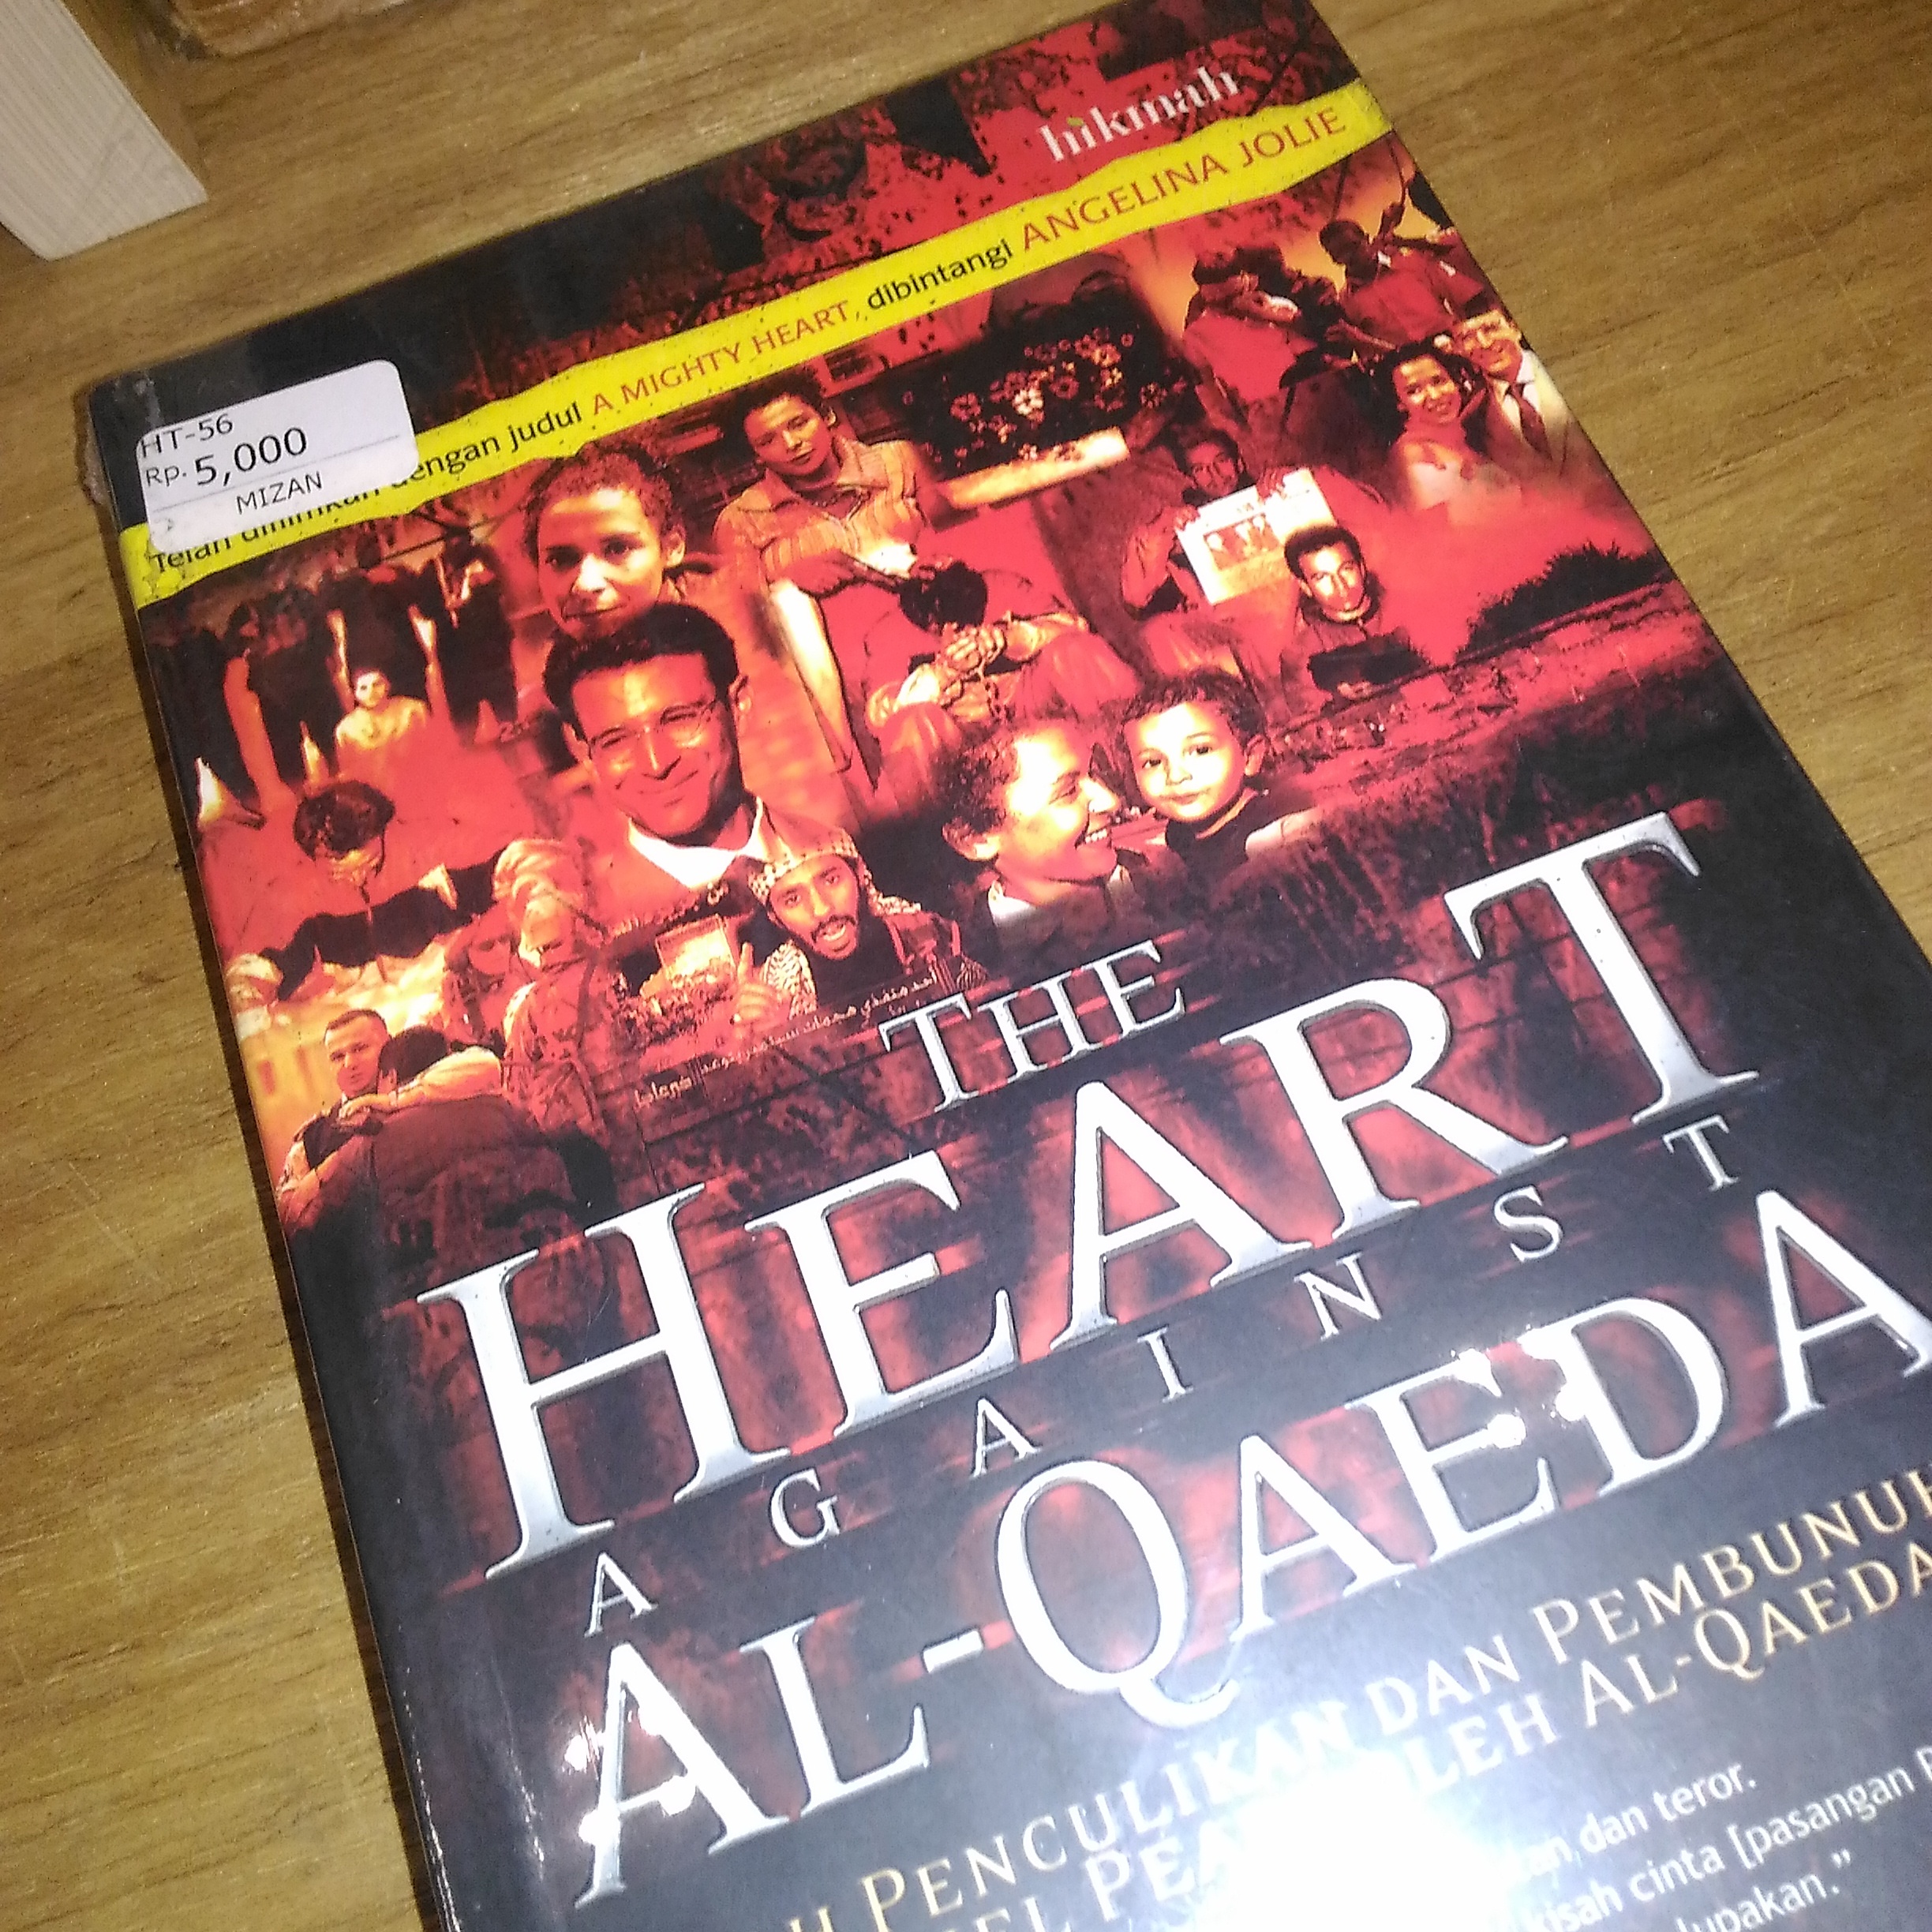 A mighty heart buku yang ditulis Marriane Pearl untuk Danny Pearl